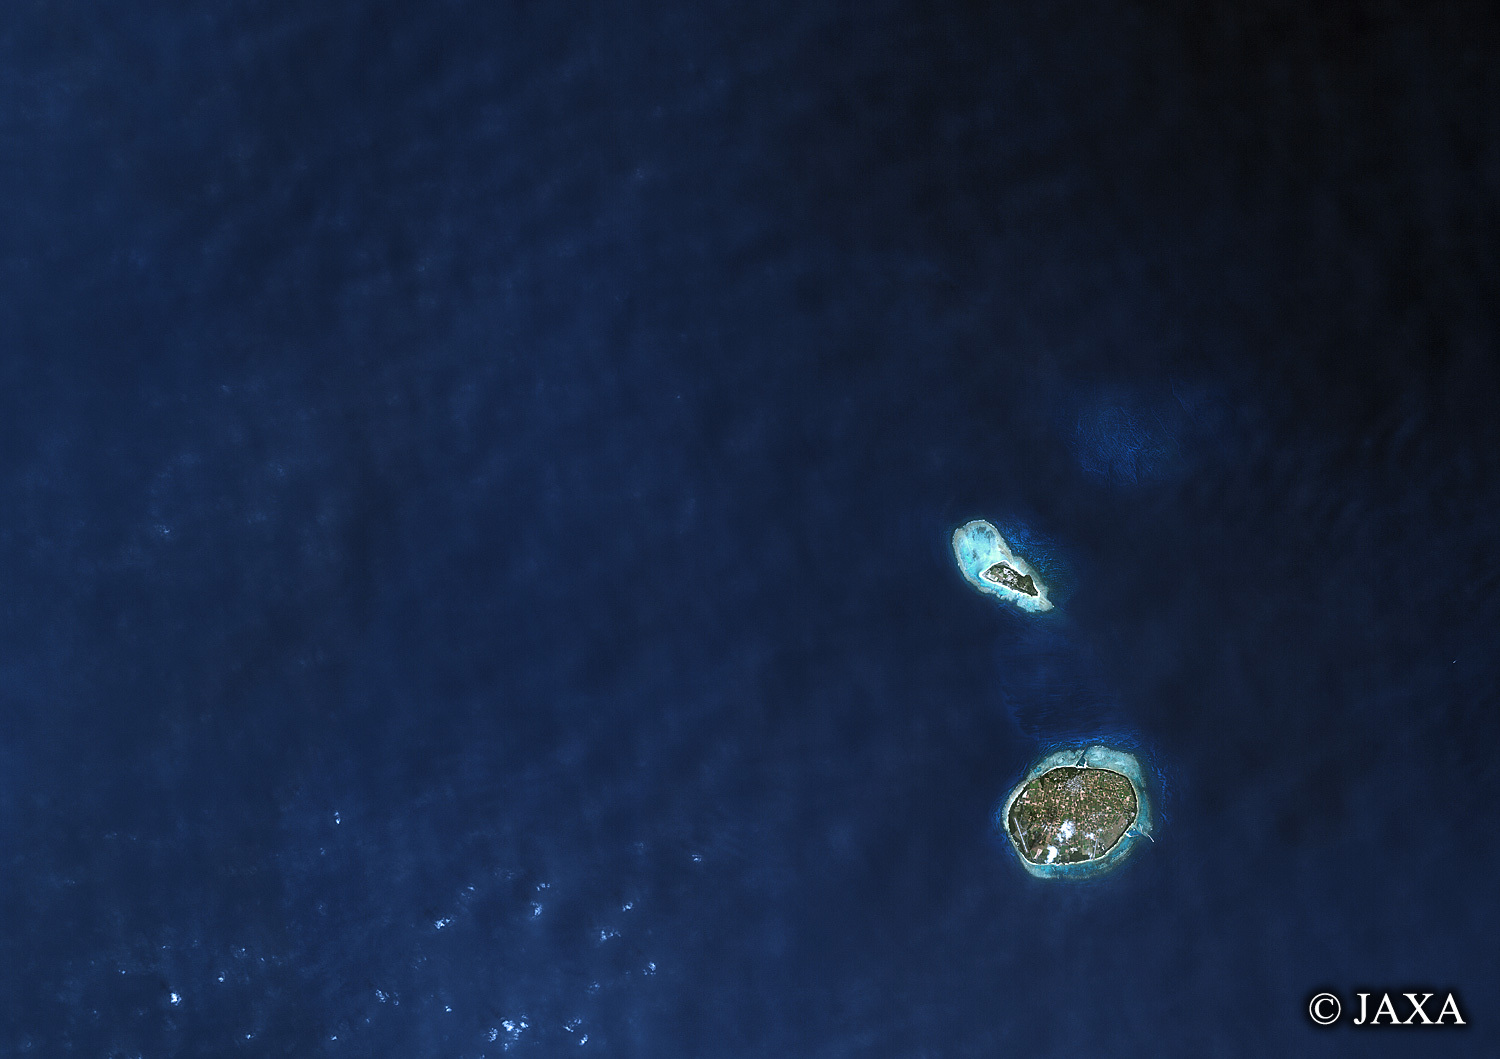 だいちから見た日本の都市 多良間島:衛星画像